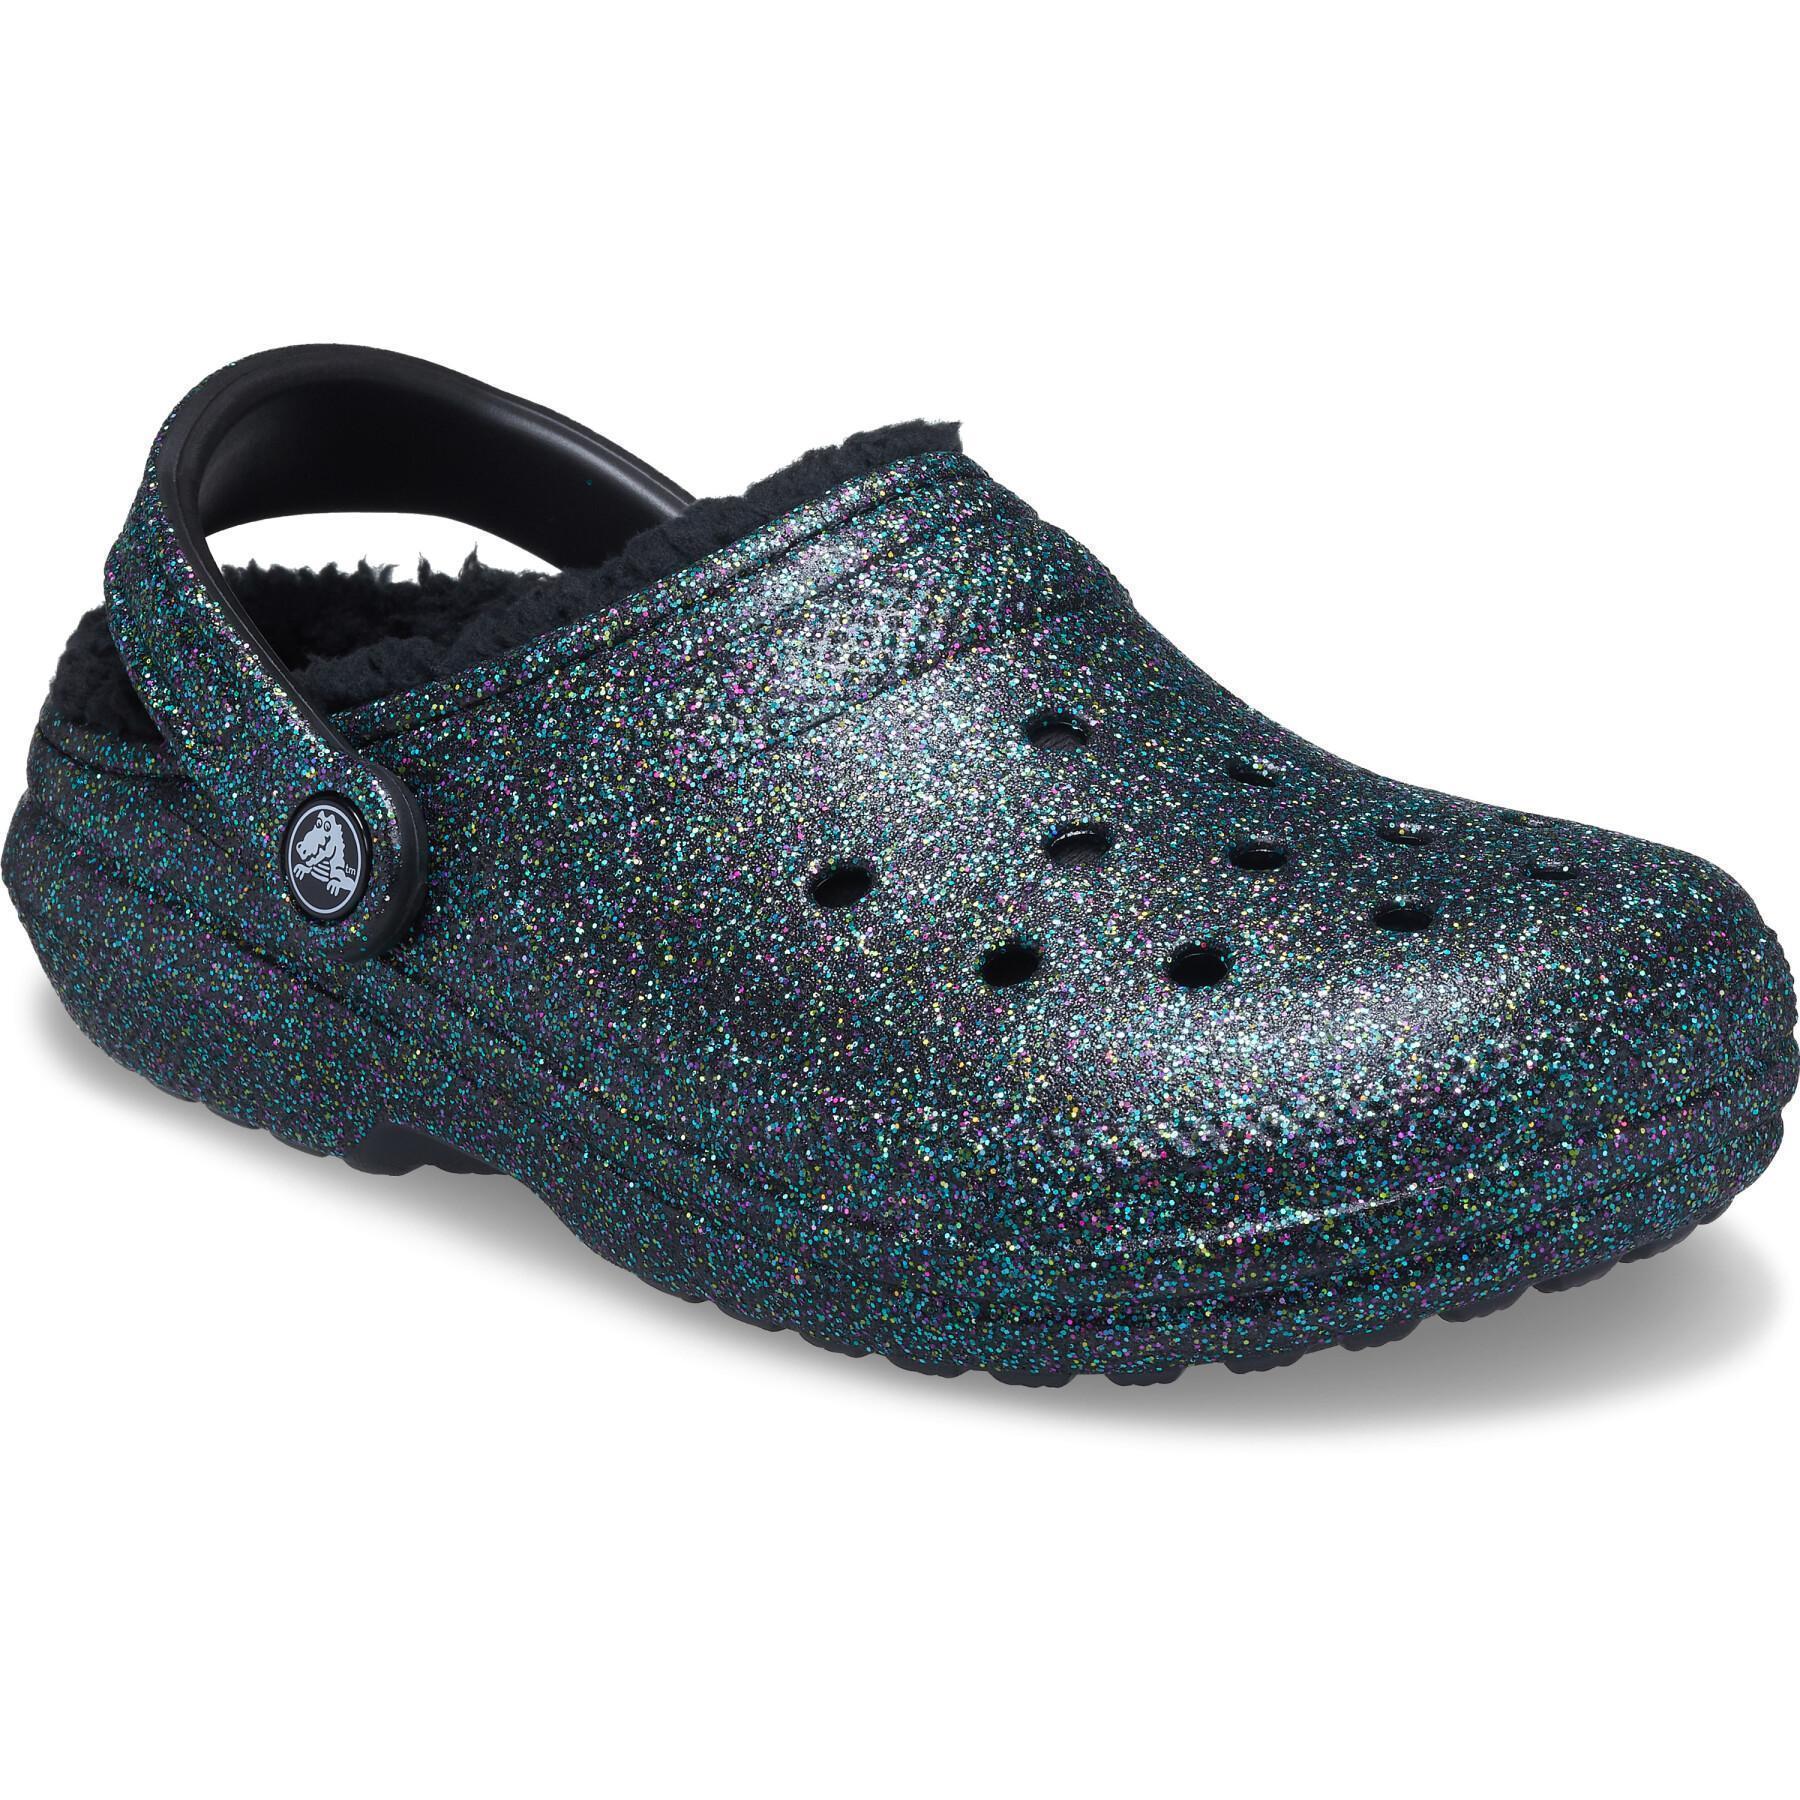 Crocs classic glitter lined clog SSG